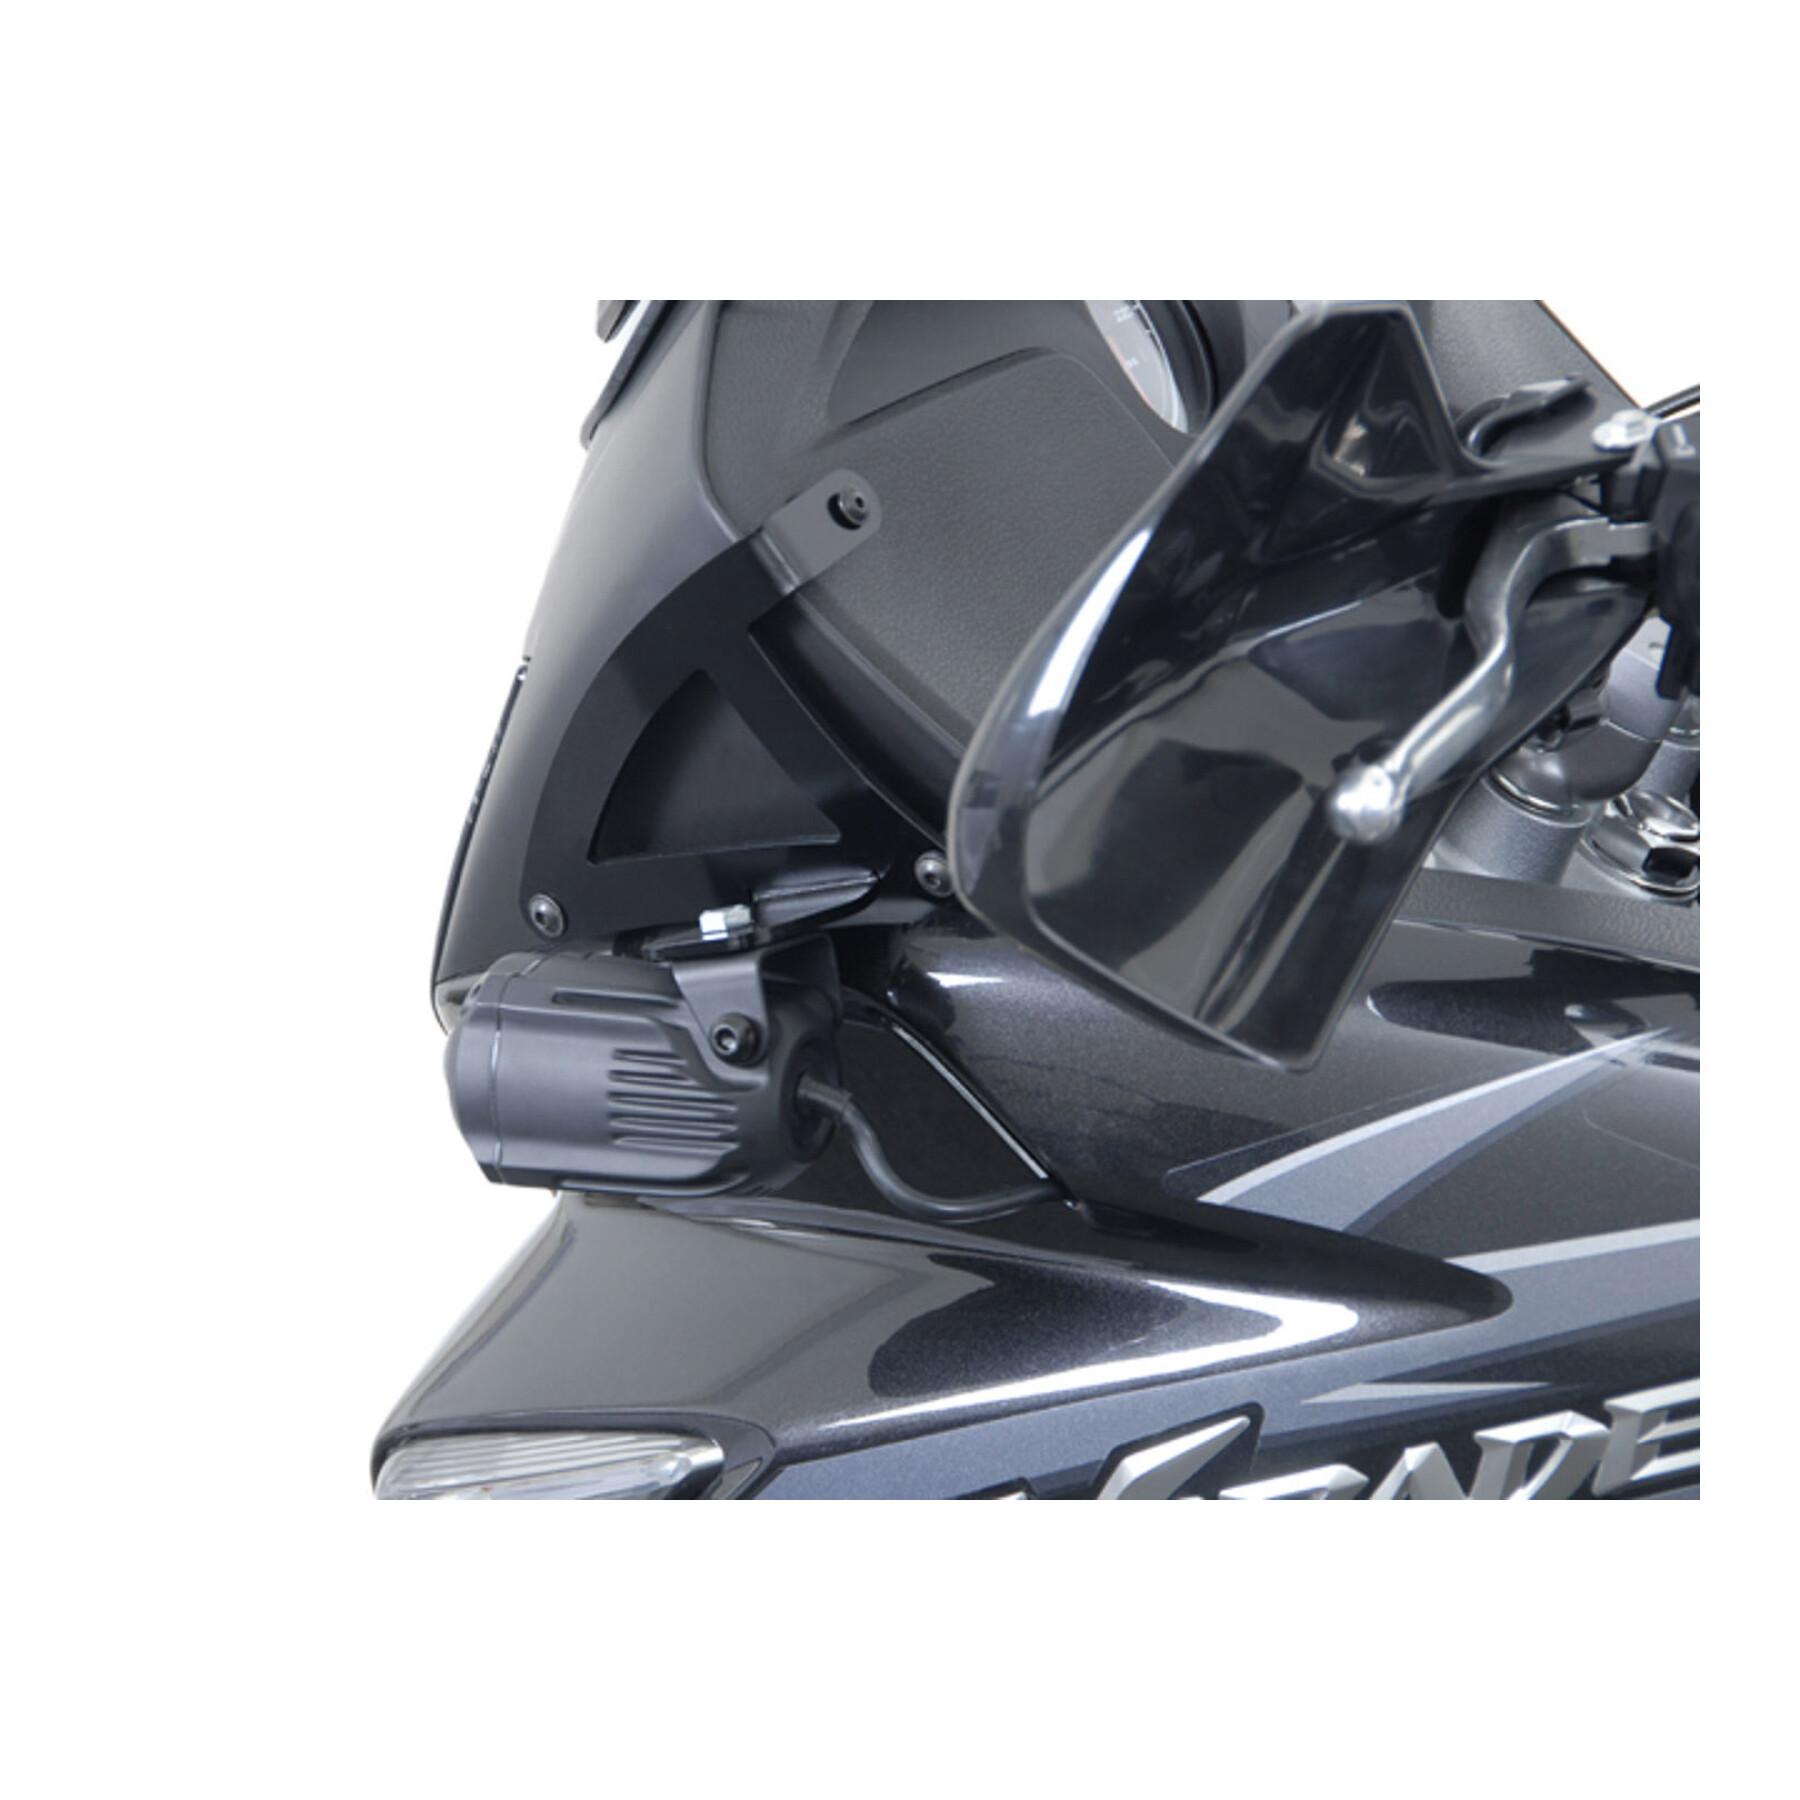 Led-Zusatzleuchte Motorrad Sw-Motech Xl1000v Varadero (01-11)